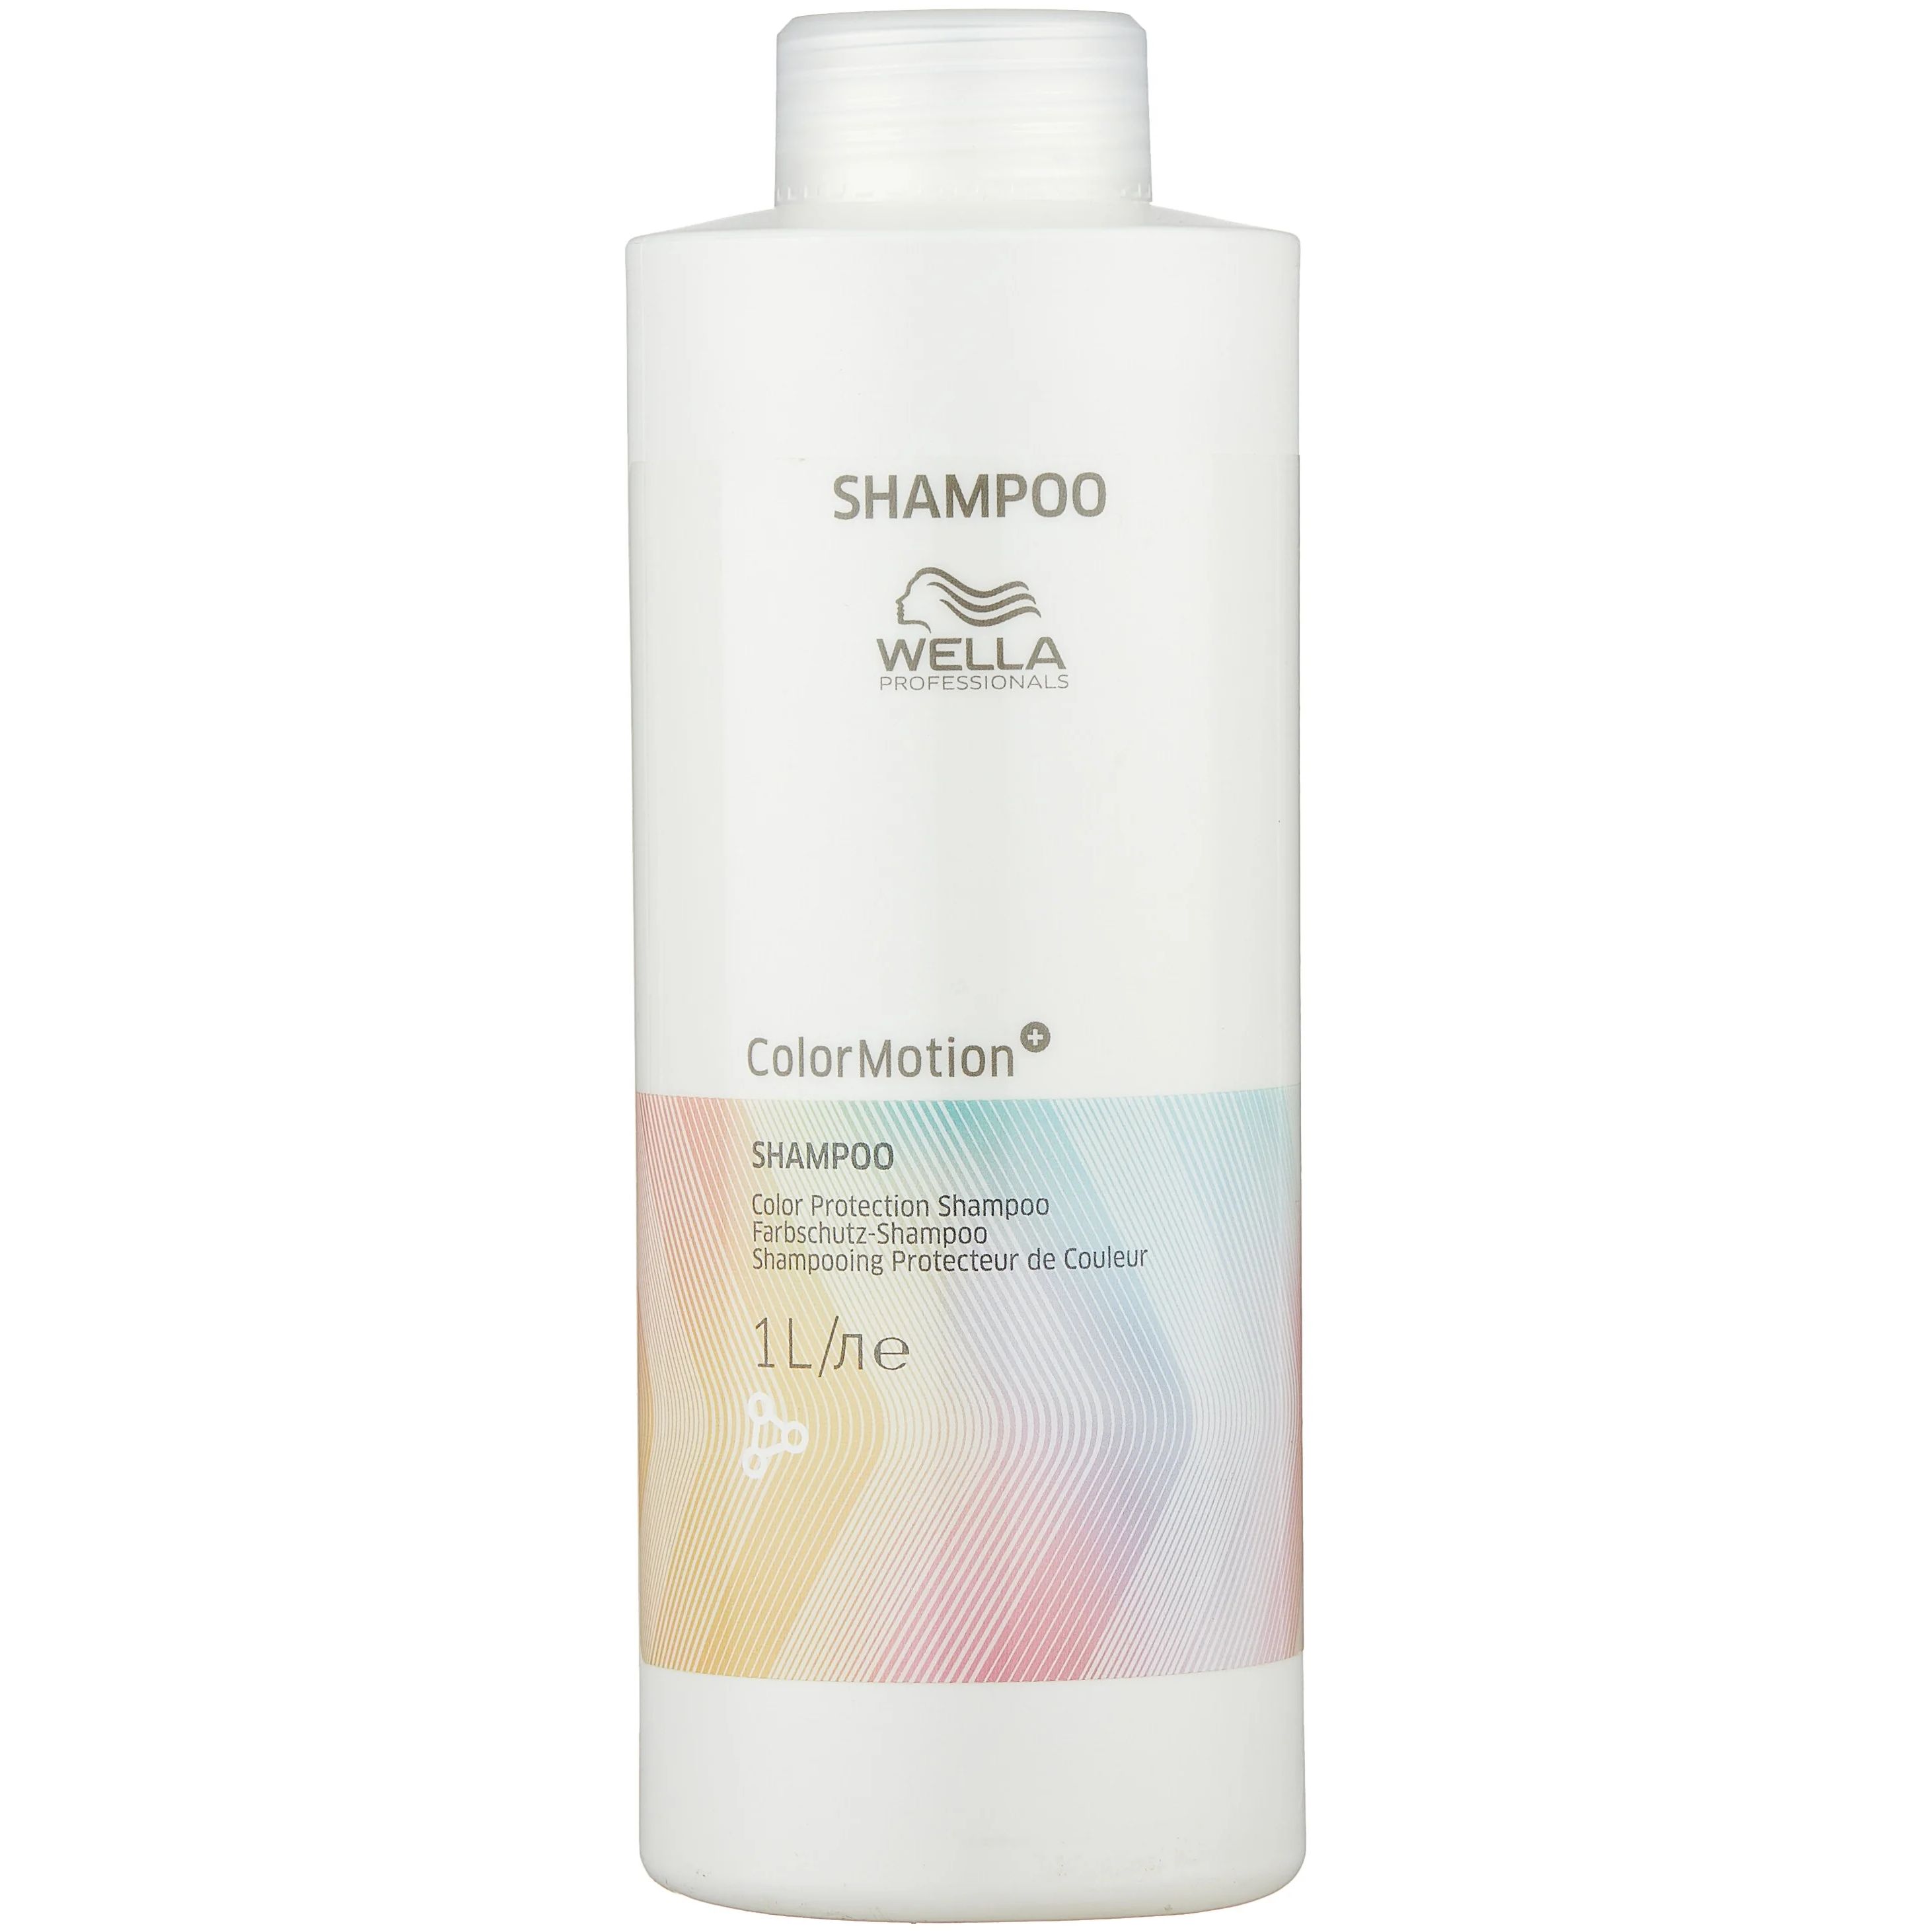 Шампунь Wella Professionals Color Motion+ Shampoo для защиты цвета 1000 мл праймер спрей для волос перед окрашиванием color motion 5406 185 мл